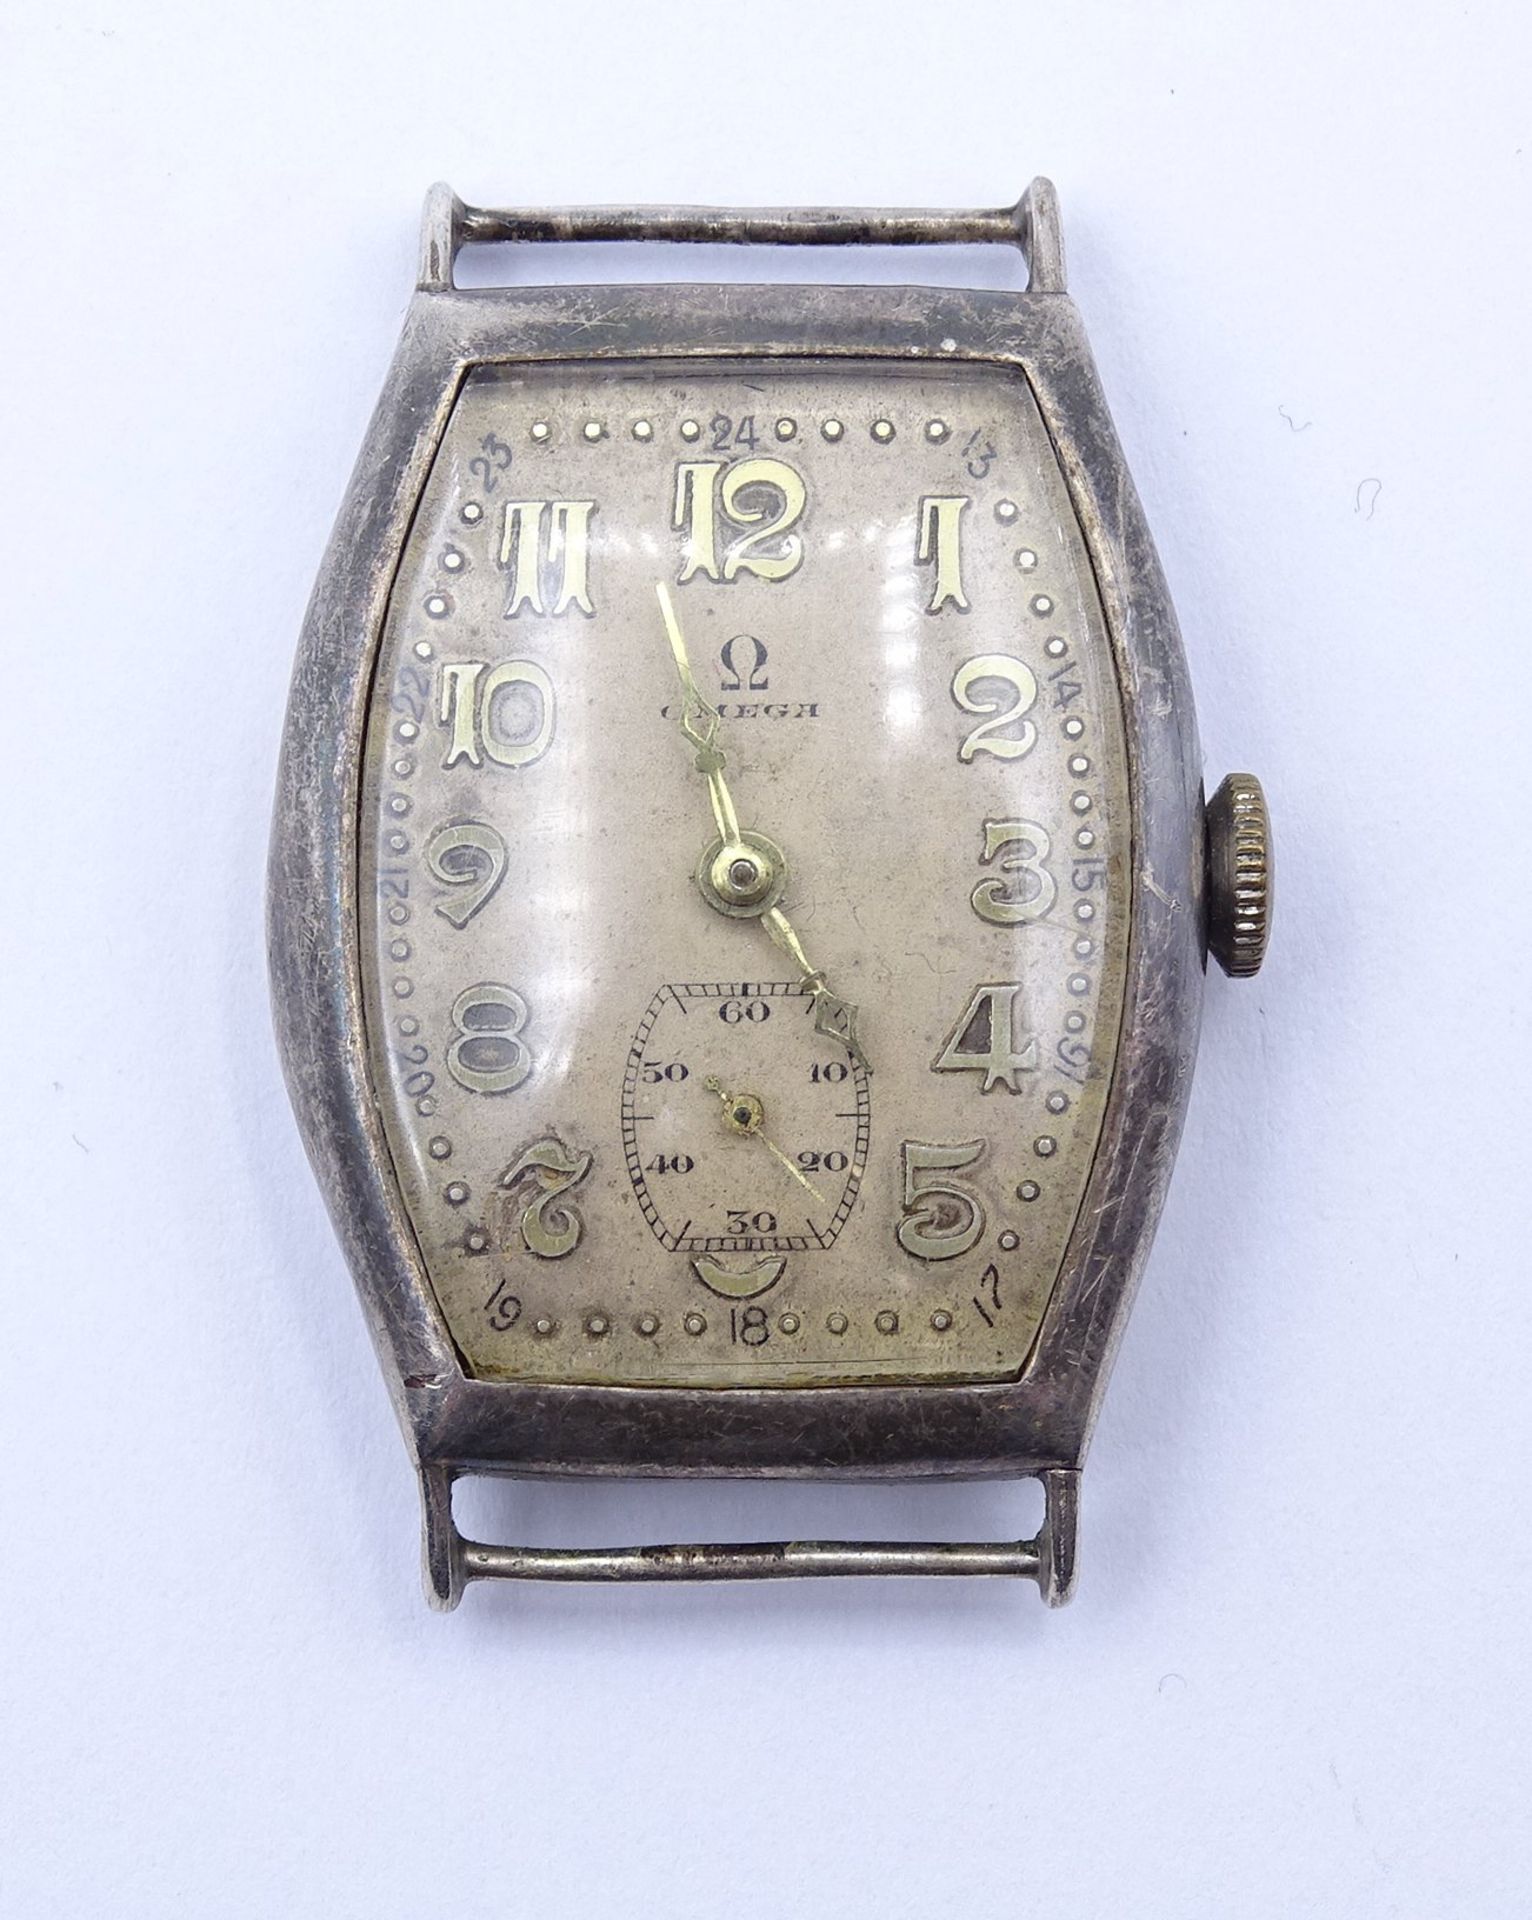 Alte Damen Armbanduhr "Omega", Cal. 23.7 S T2, mechanisch, Werk läuft kurz an, Silbergehäuse 0.925,